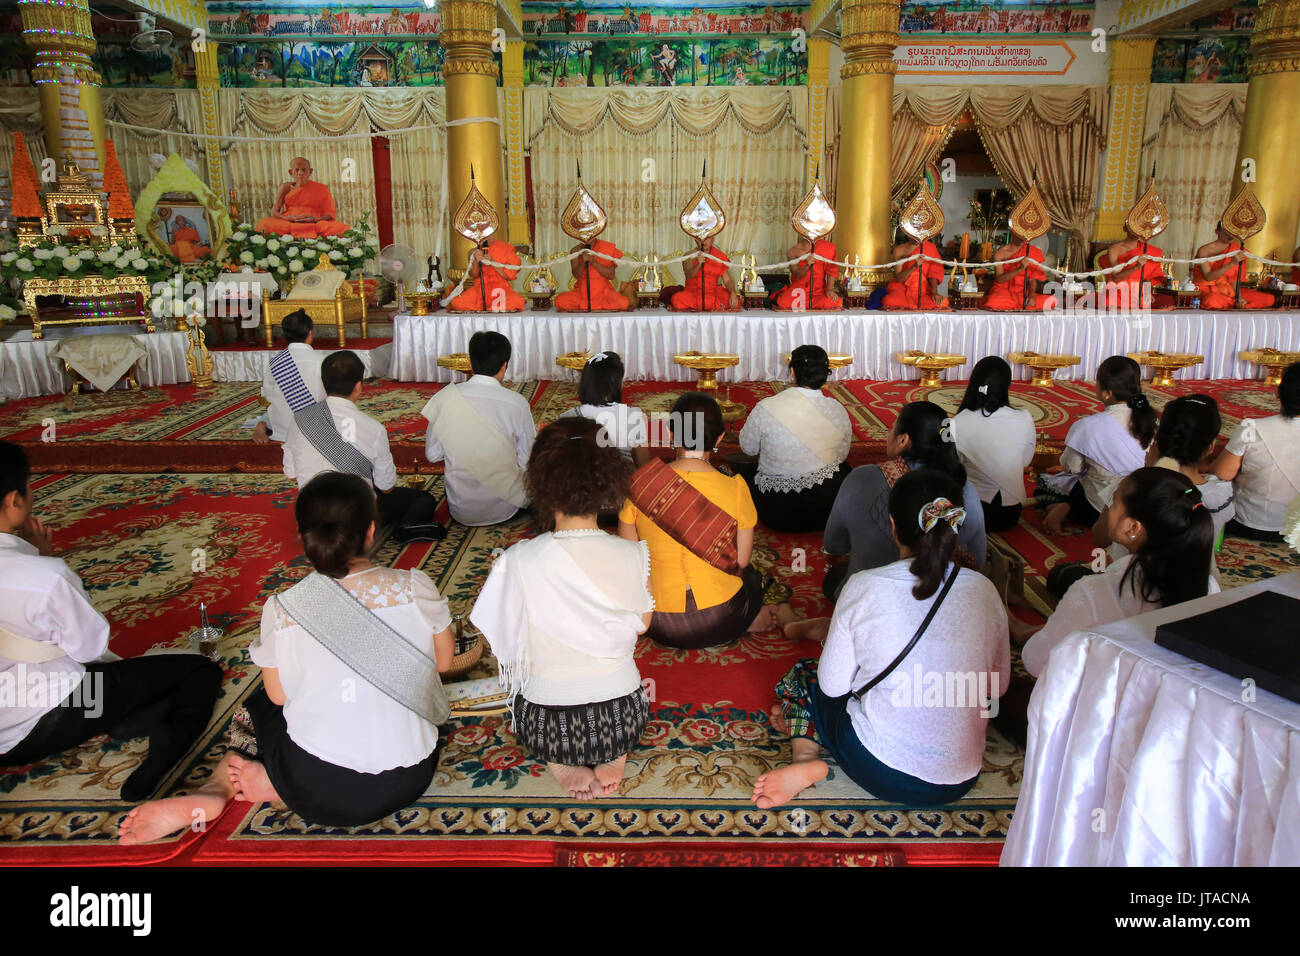 Sentados los monjes budistas rezan en recuerdo de los fallecidos, el Wat Ong Teu Mahawihan (Templo del Gran Buda), en Vientiane, Laos, Indochina, Sude Foto de stock